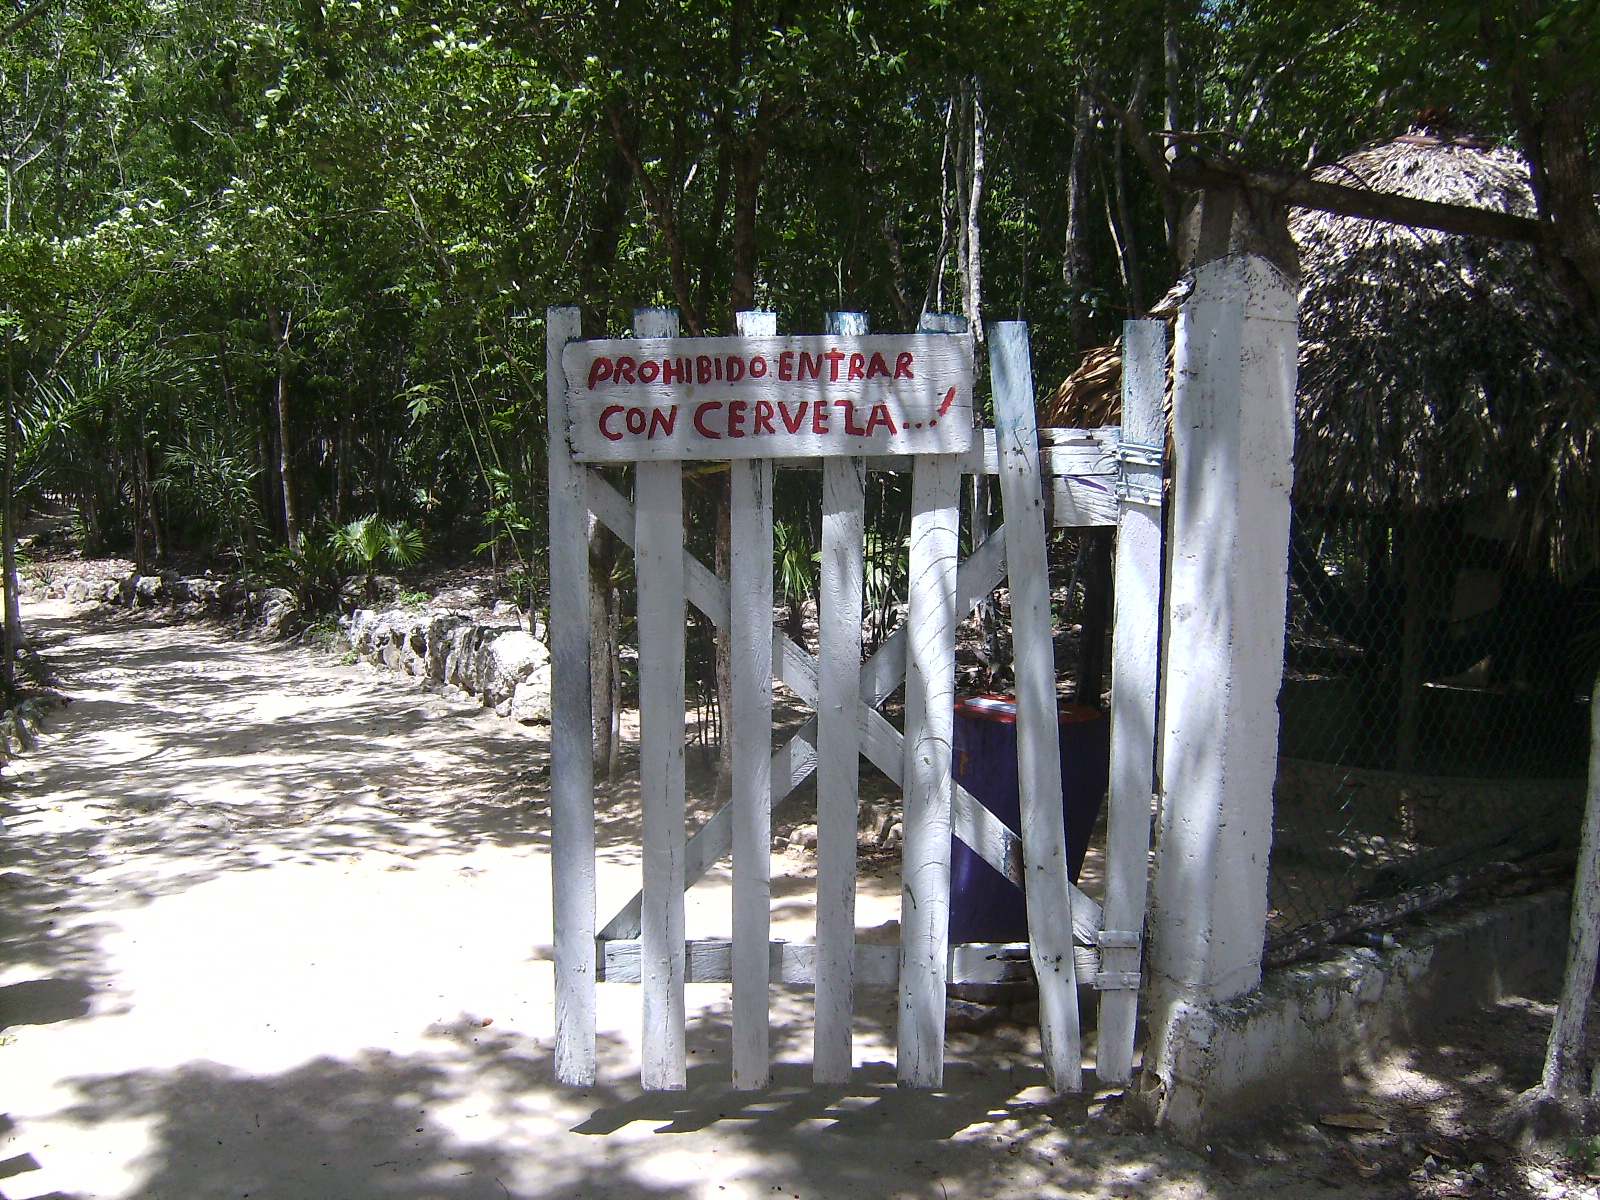 Prohibido entrar con cerveza en el cenote